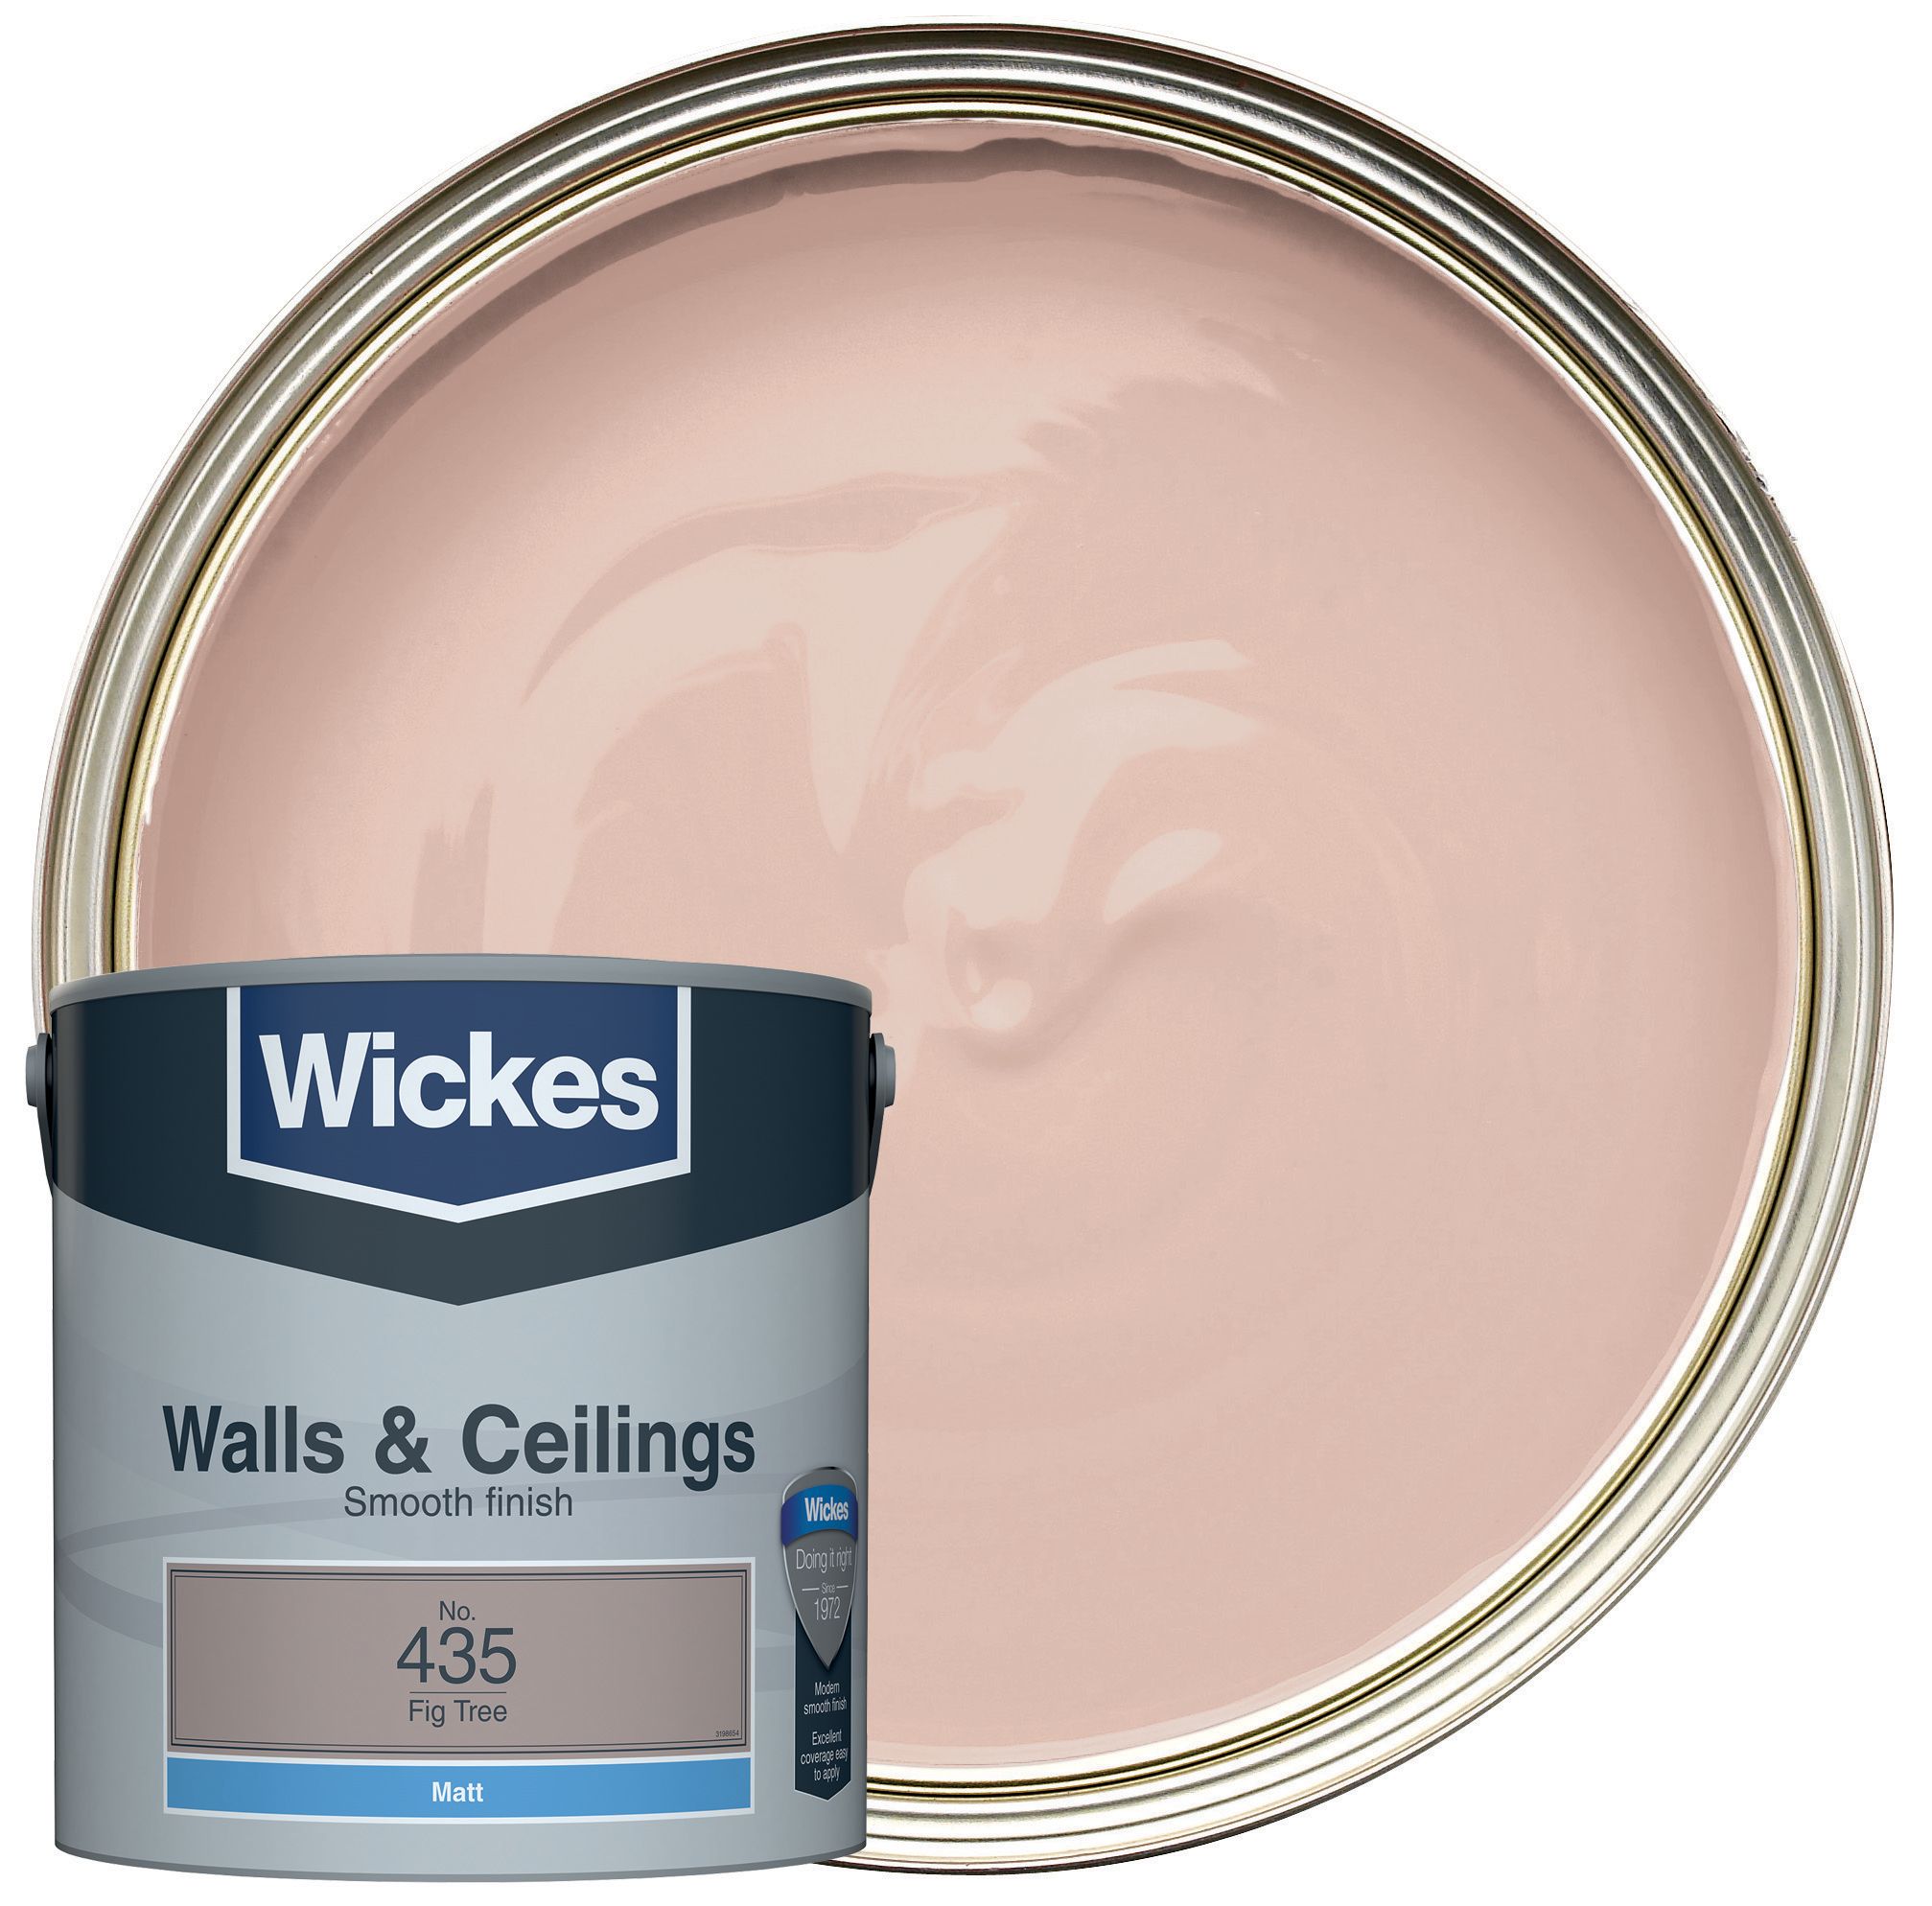 Wickes Vinyl Matt Emulsion Paint - Fig Tree No.435 - 2.5L